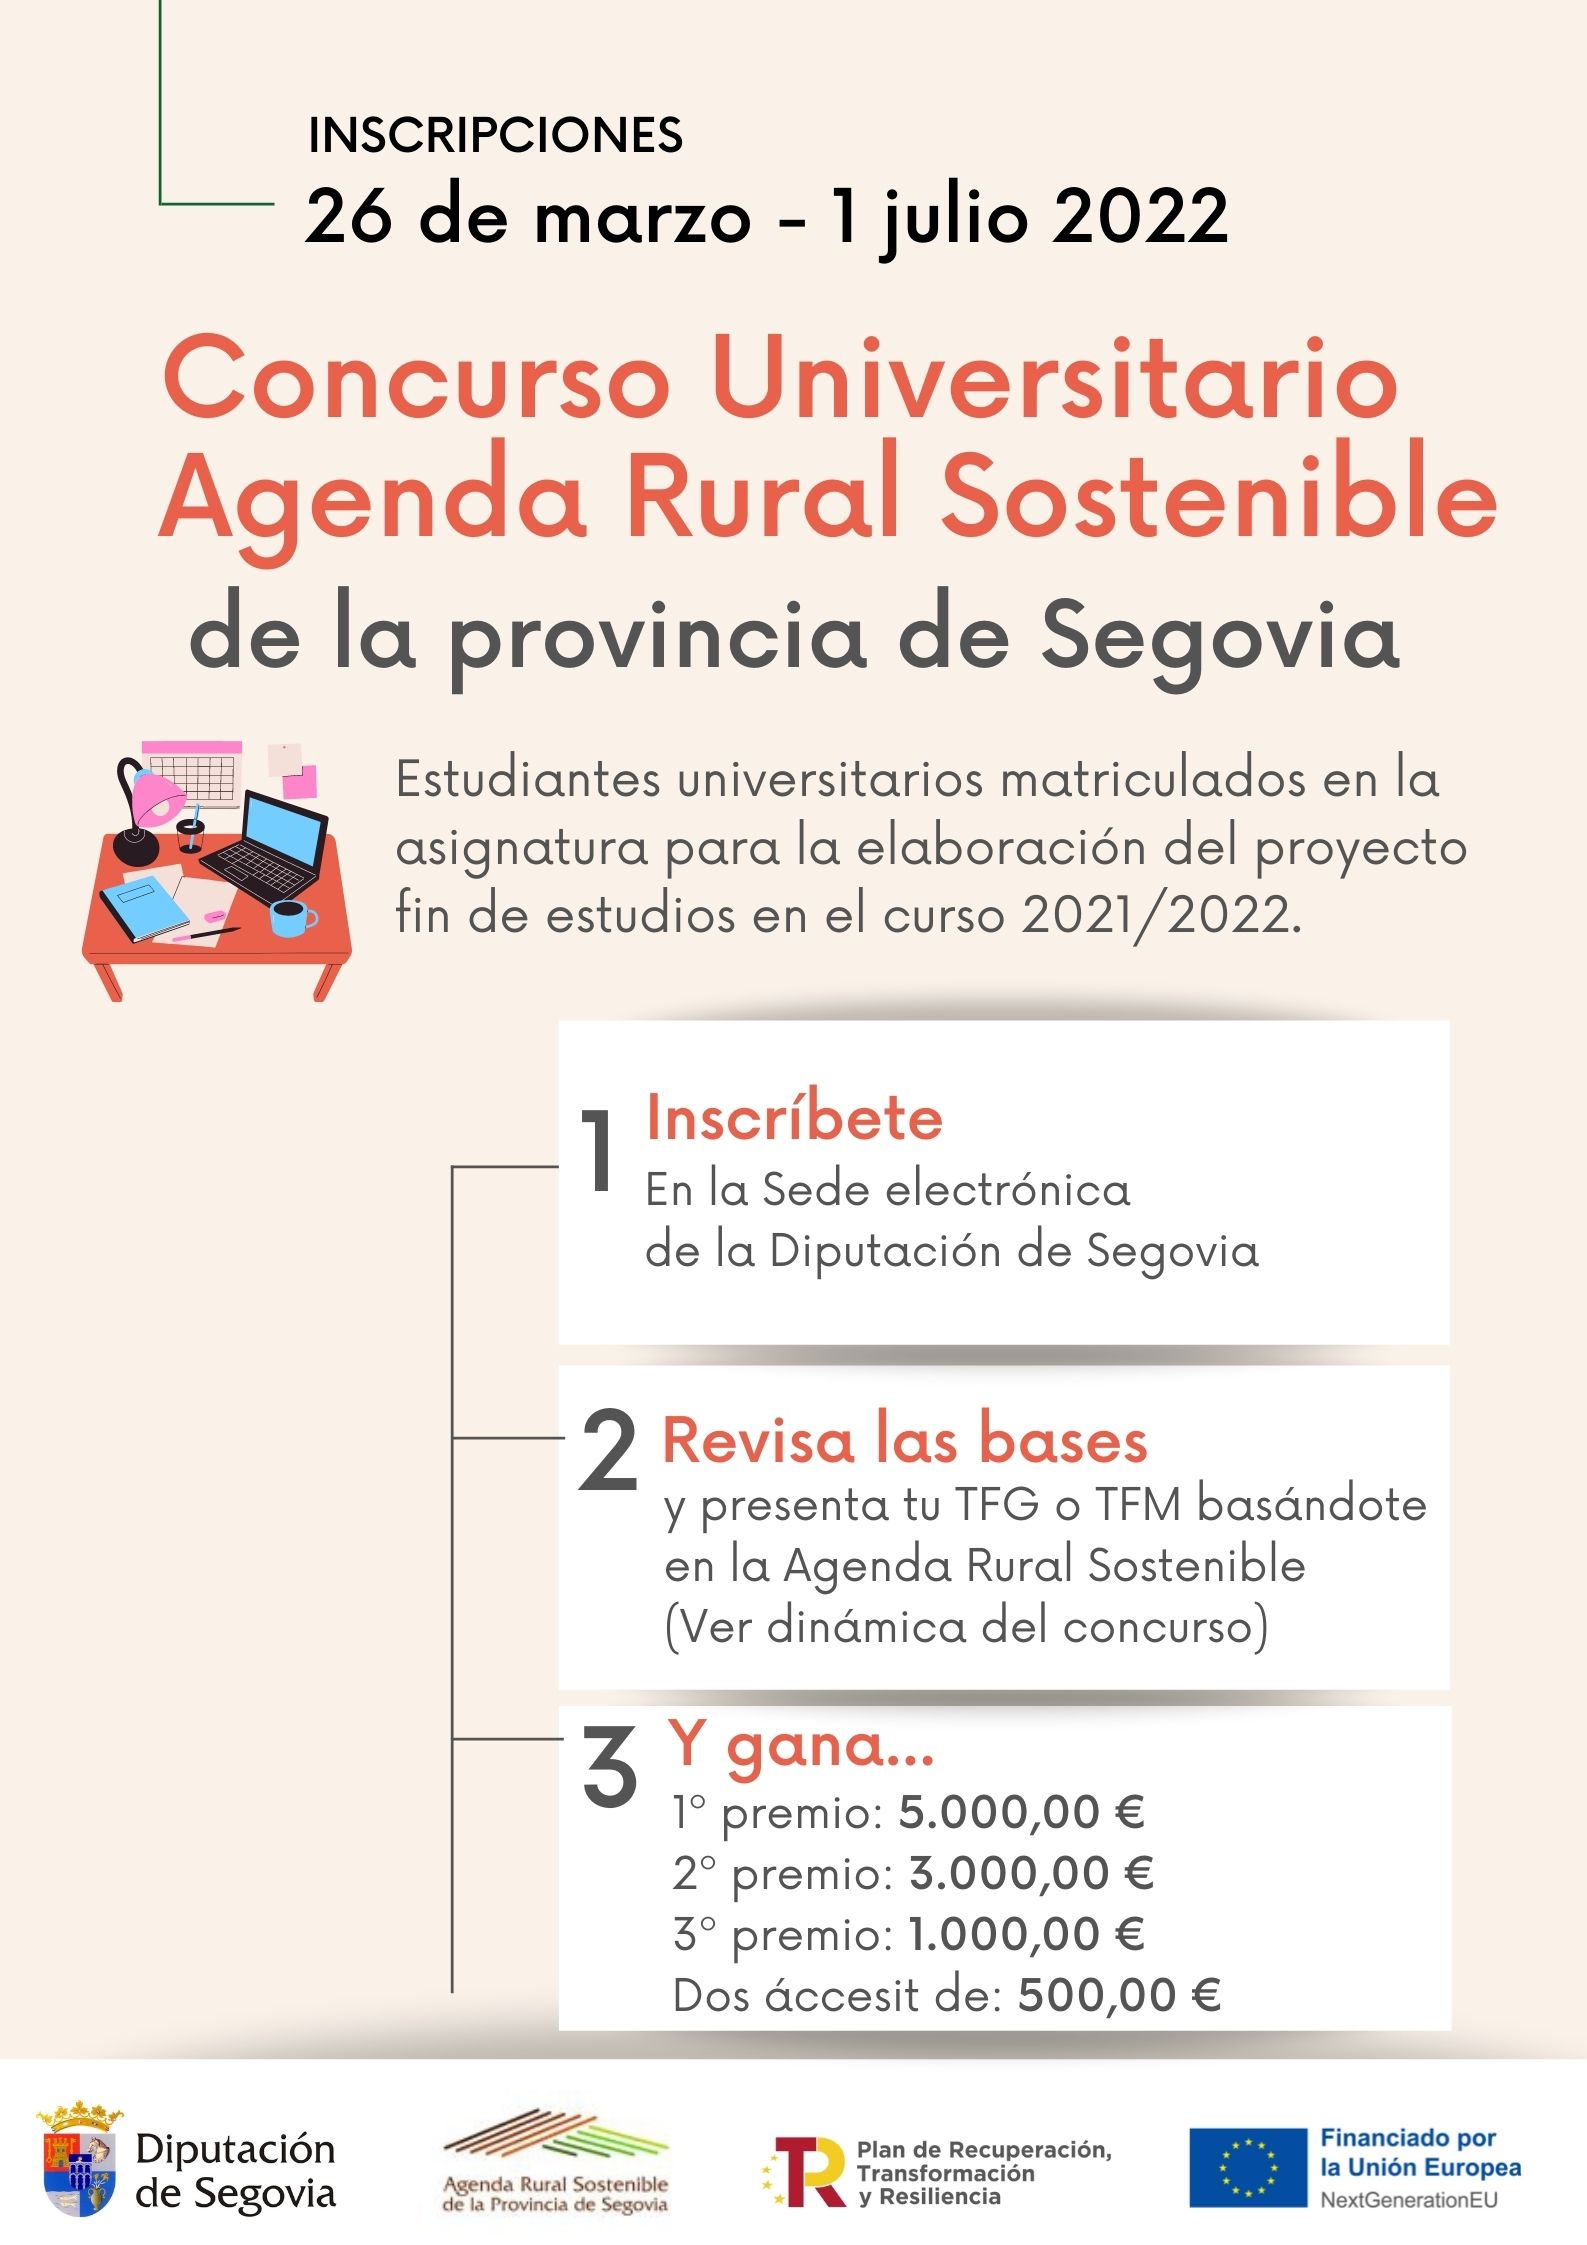 Concurso universitario de la Agenda Rural Sostenible impulsado por la Diputación de Segovia